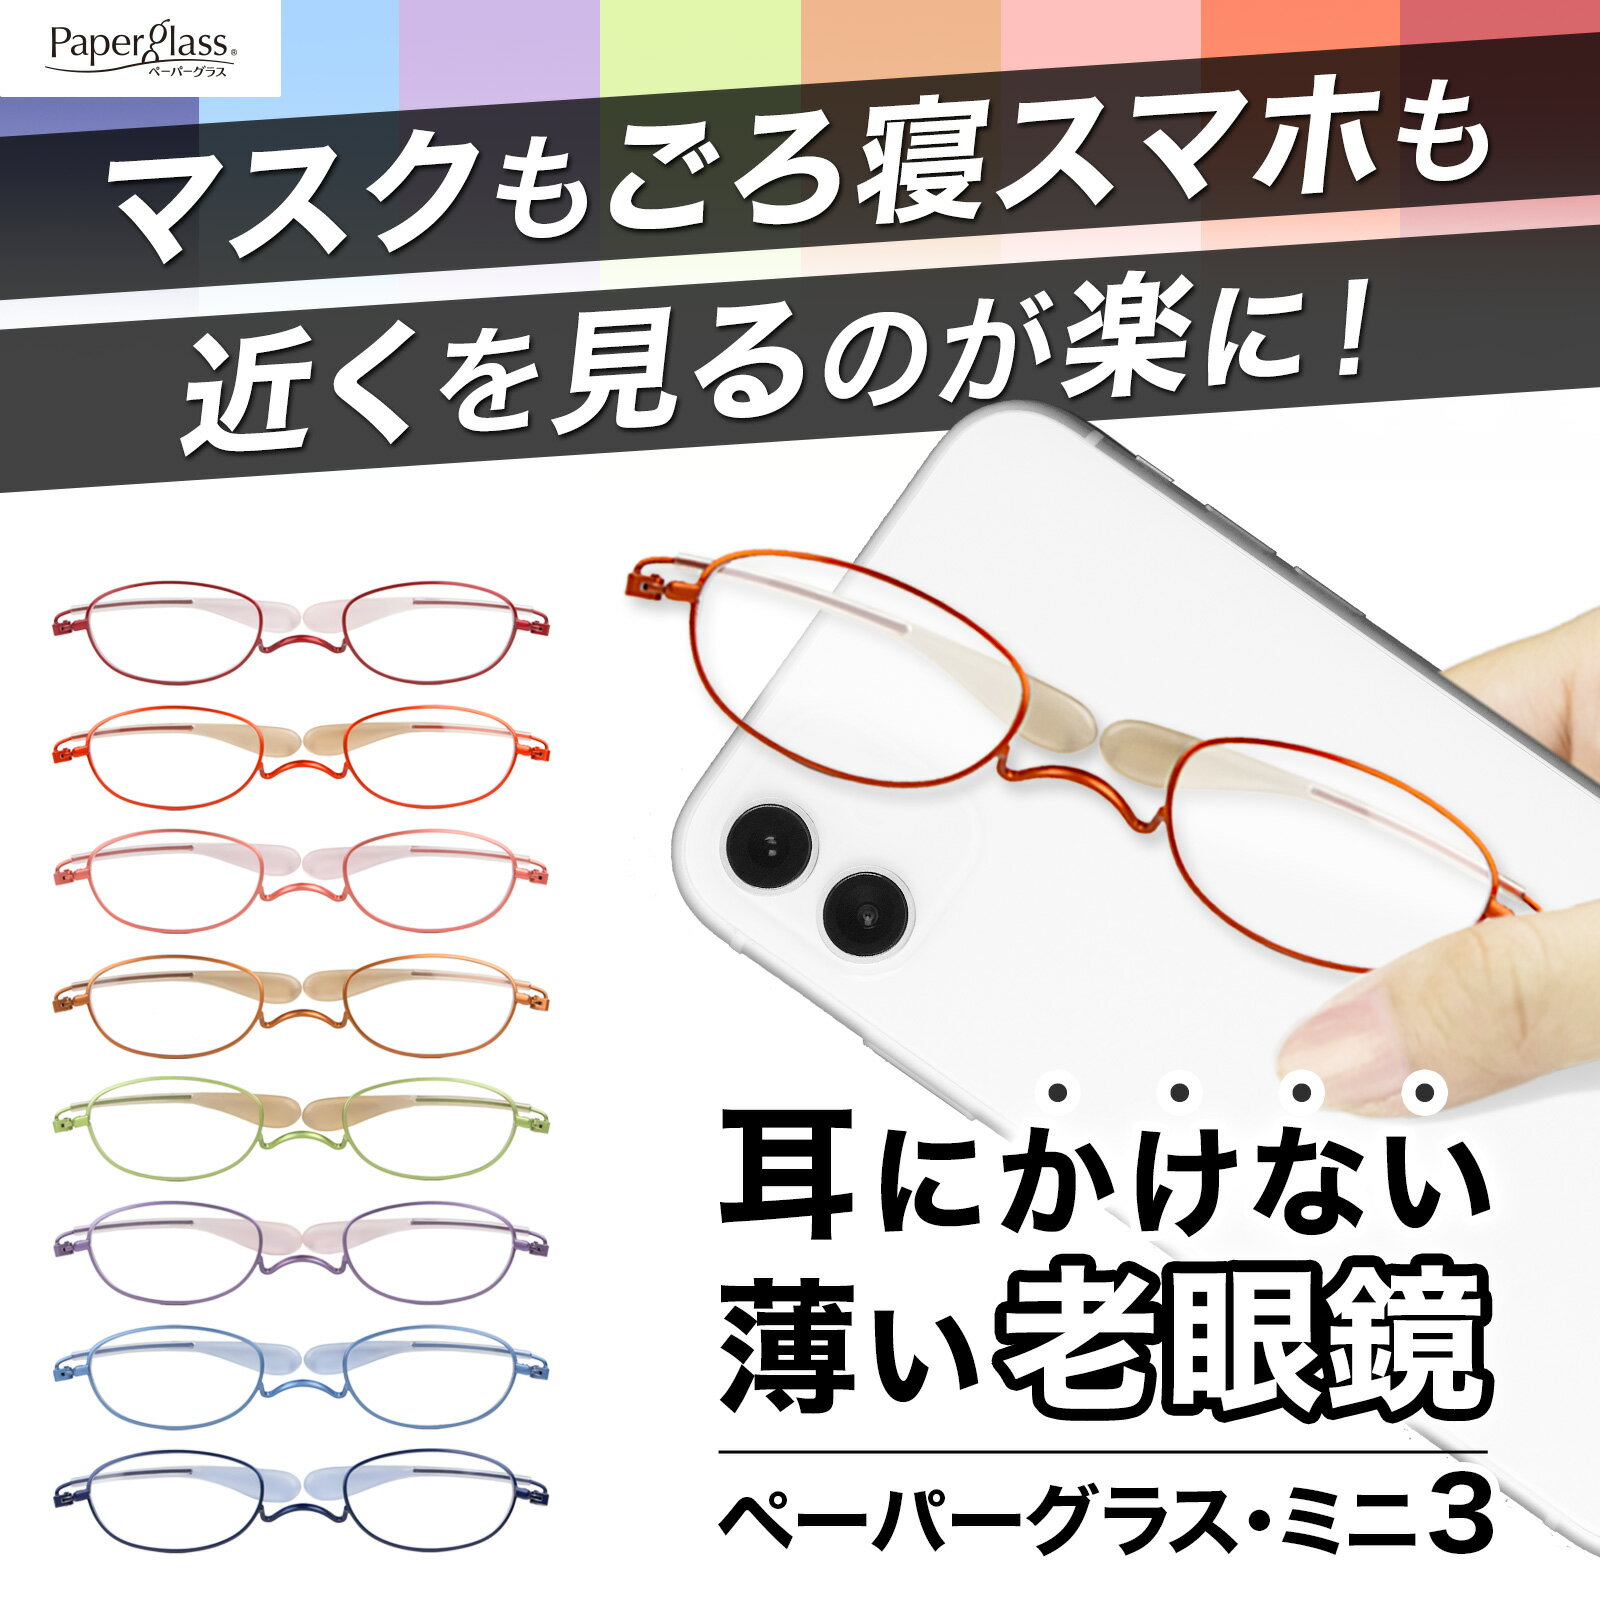 耳に掛けない薄型 老眼鏡ペーパーグラス・ミニ3【ブルーライト